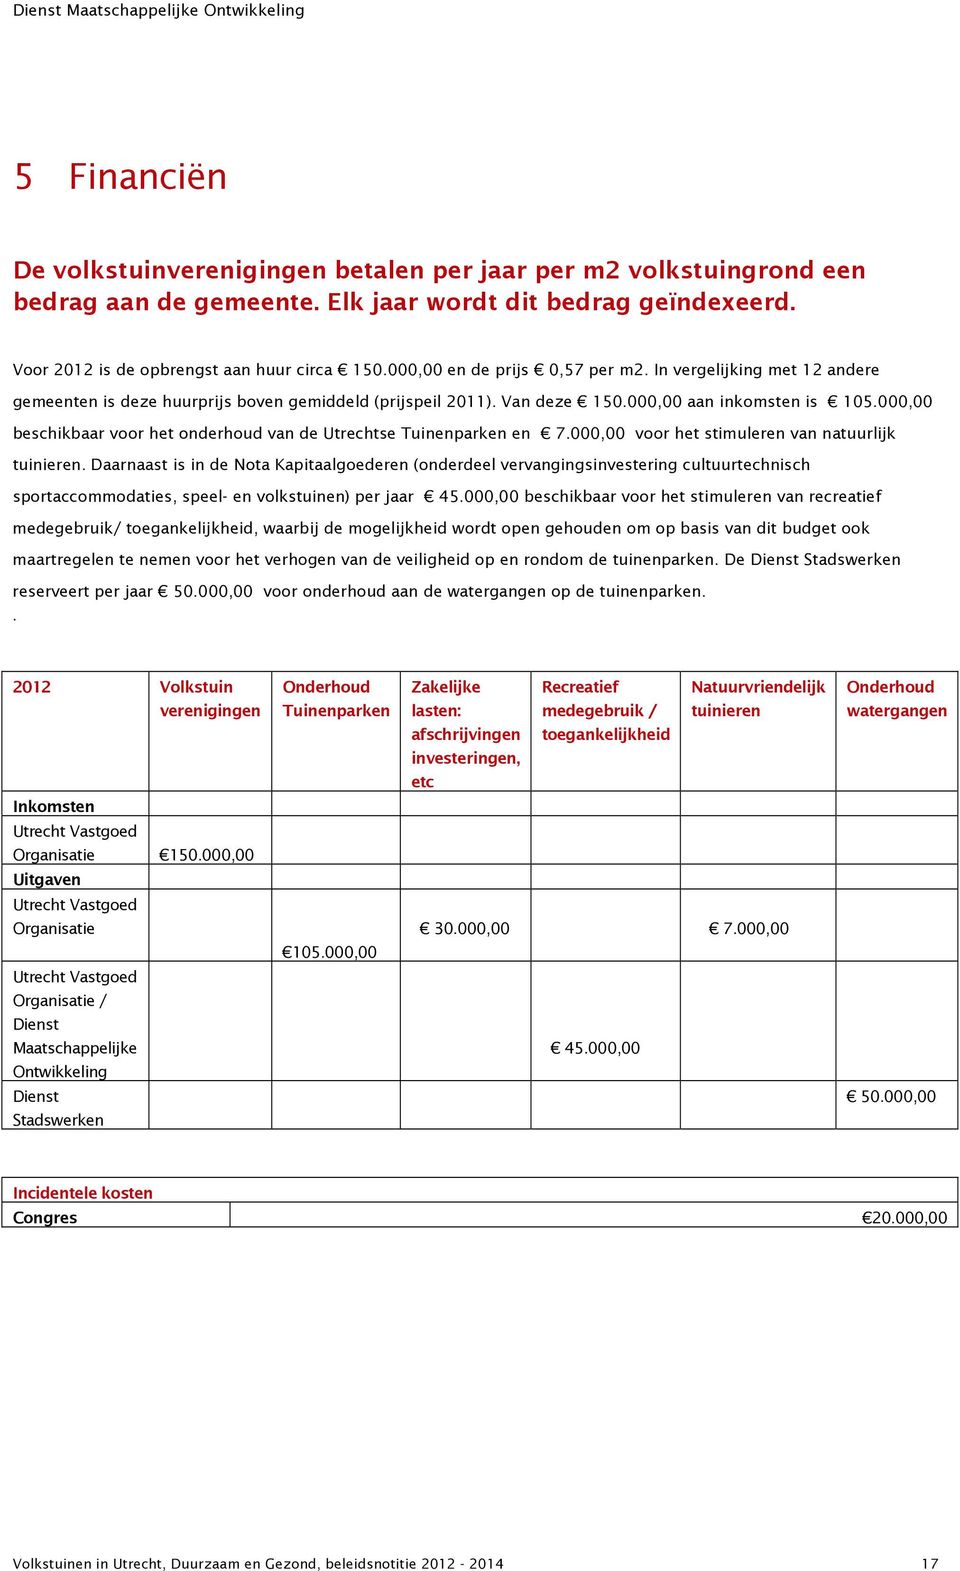 000,00 beschikbaar voor het onderhoud van de Utrechtse Tuinenparken en 7.000,00 voor het stimuleren van natuurlijk tuinieren.